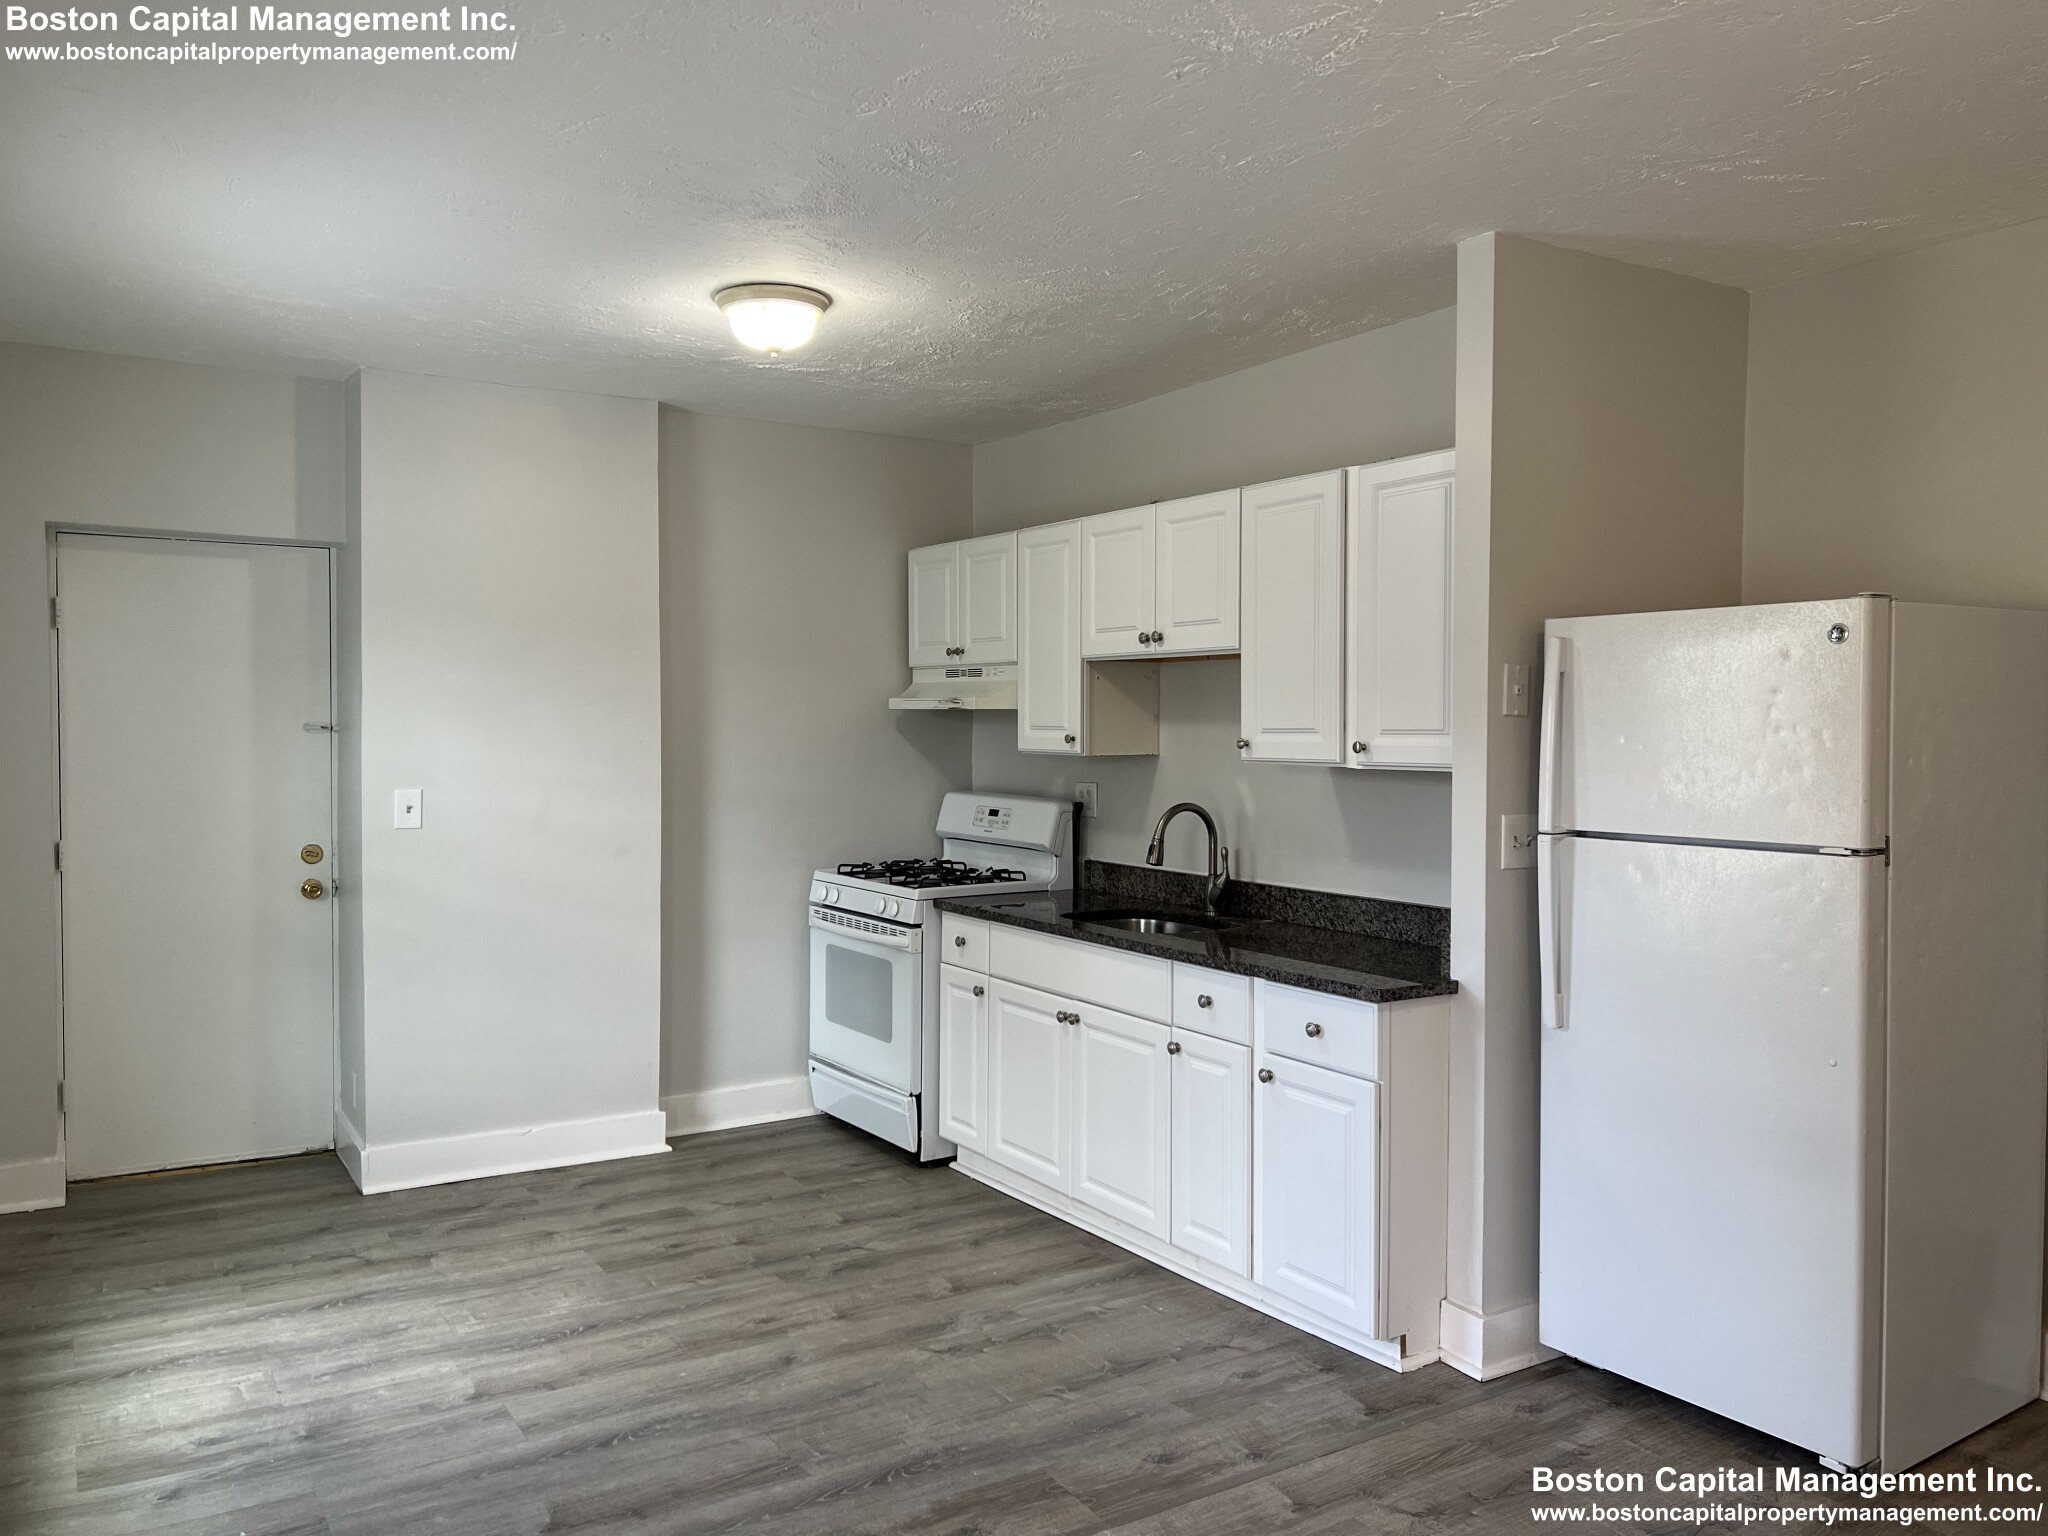 Photos of apartment on Main St.,Everett MA 02149